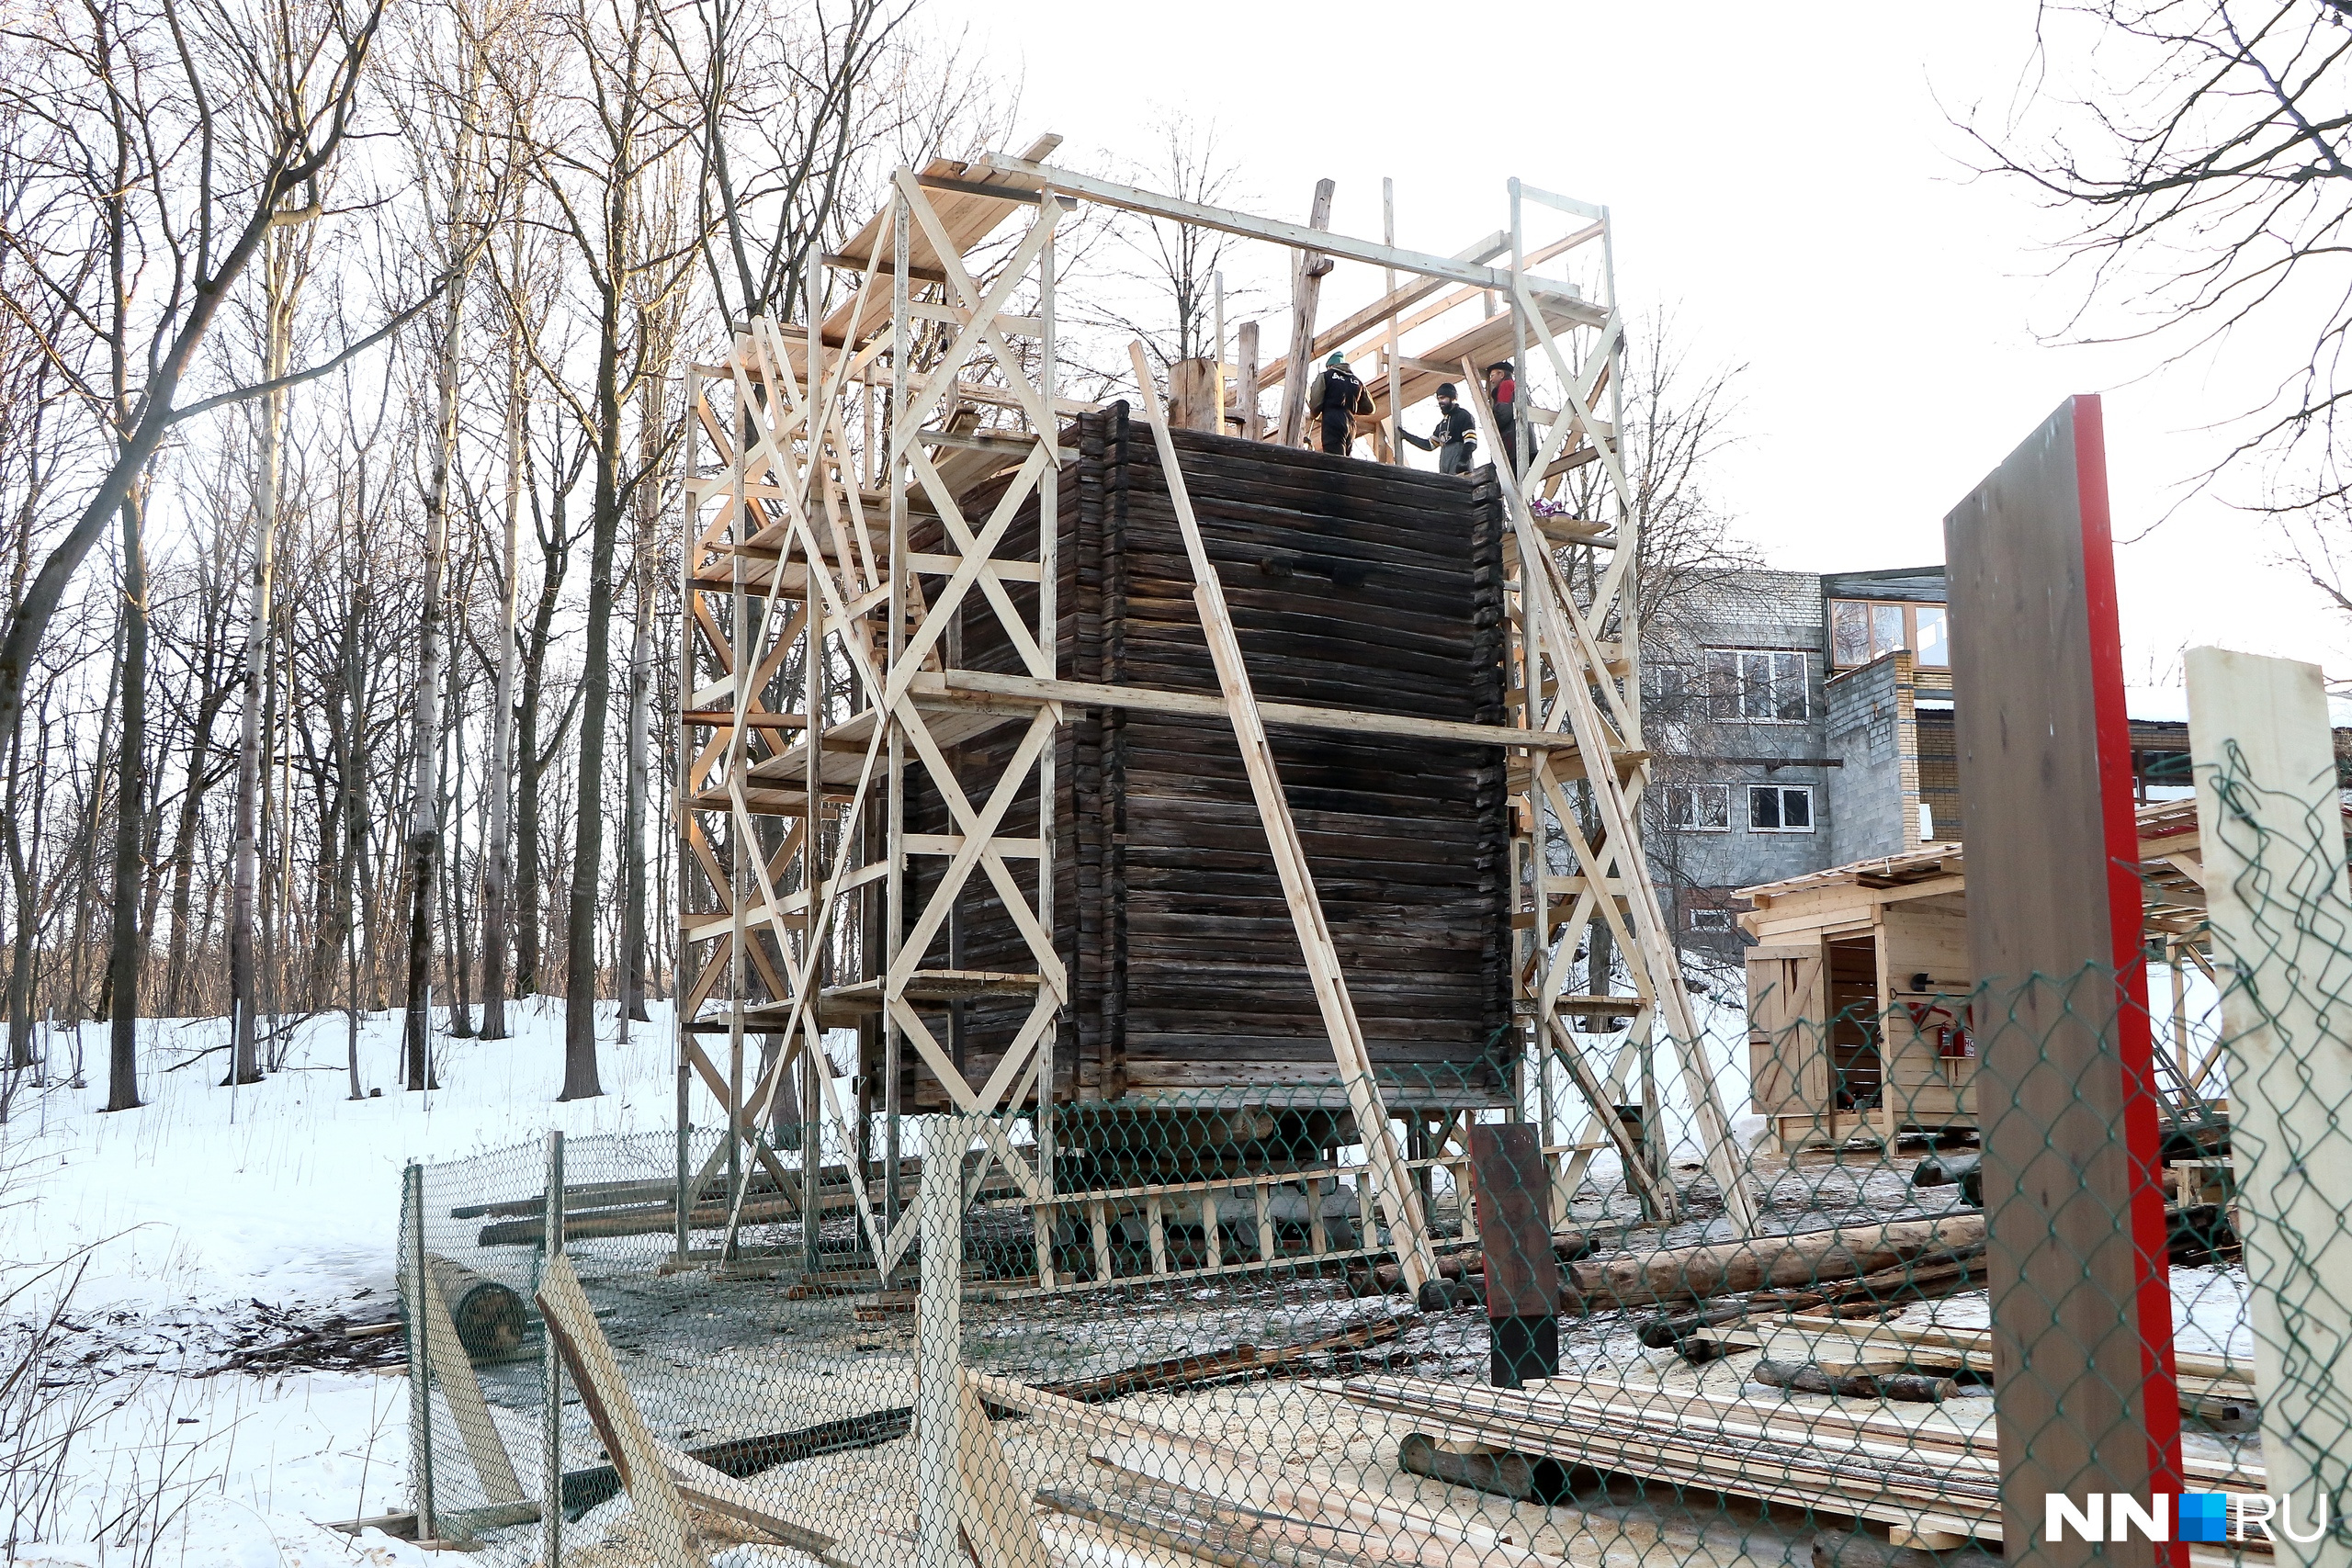 Мельница толчея-столбовка конца XIX века была привезена из деревни Петухово Городецкого района